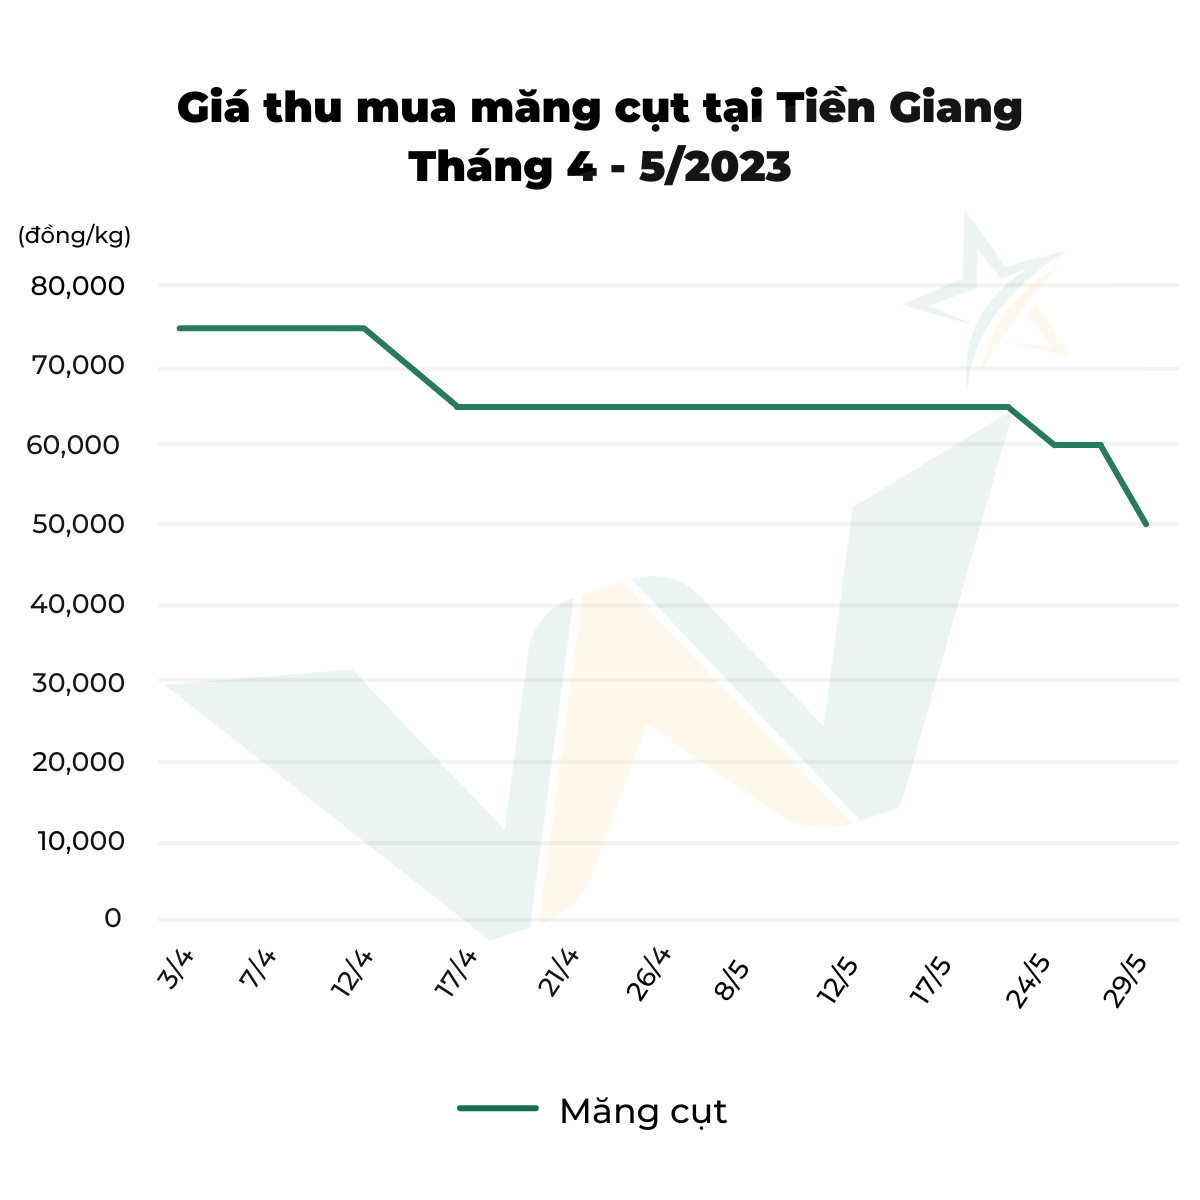 biểu đồ giá thu mua măng cụt tại Tiền Giang tháng 4-5/2023